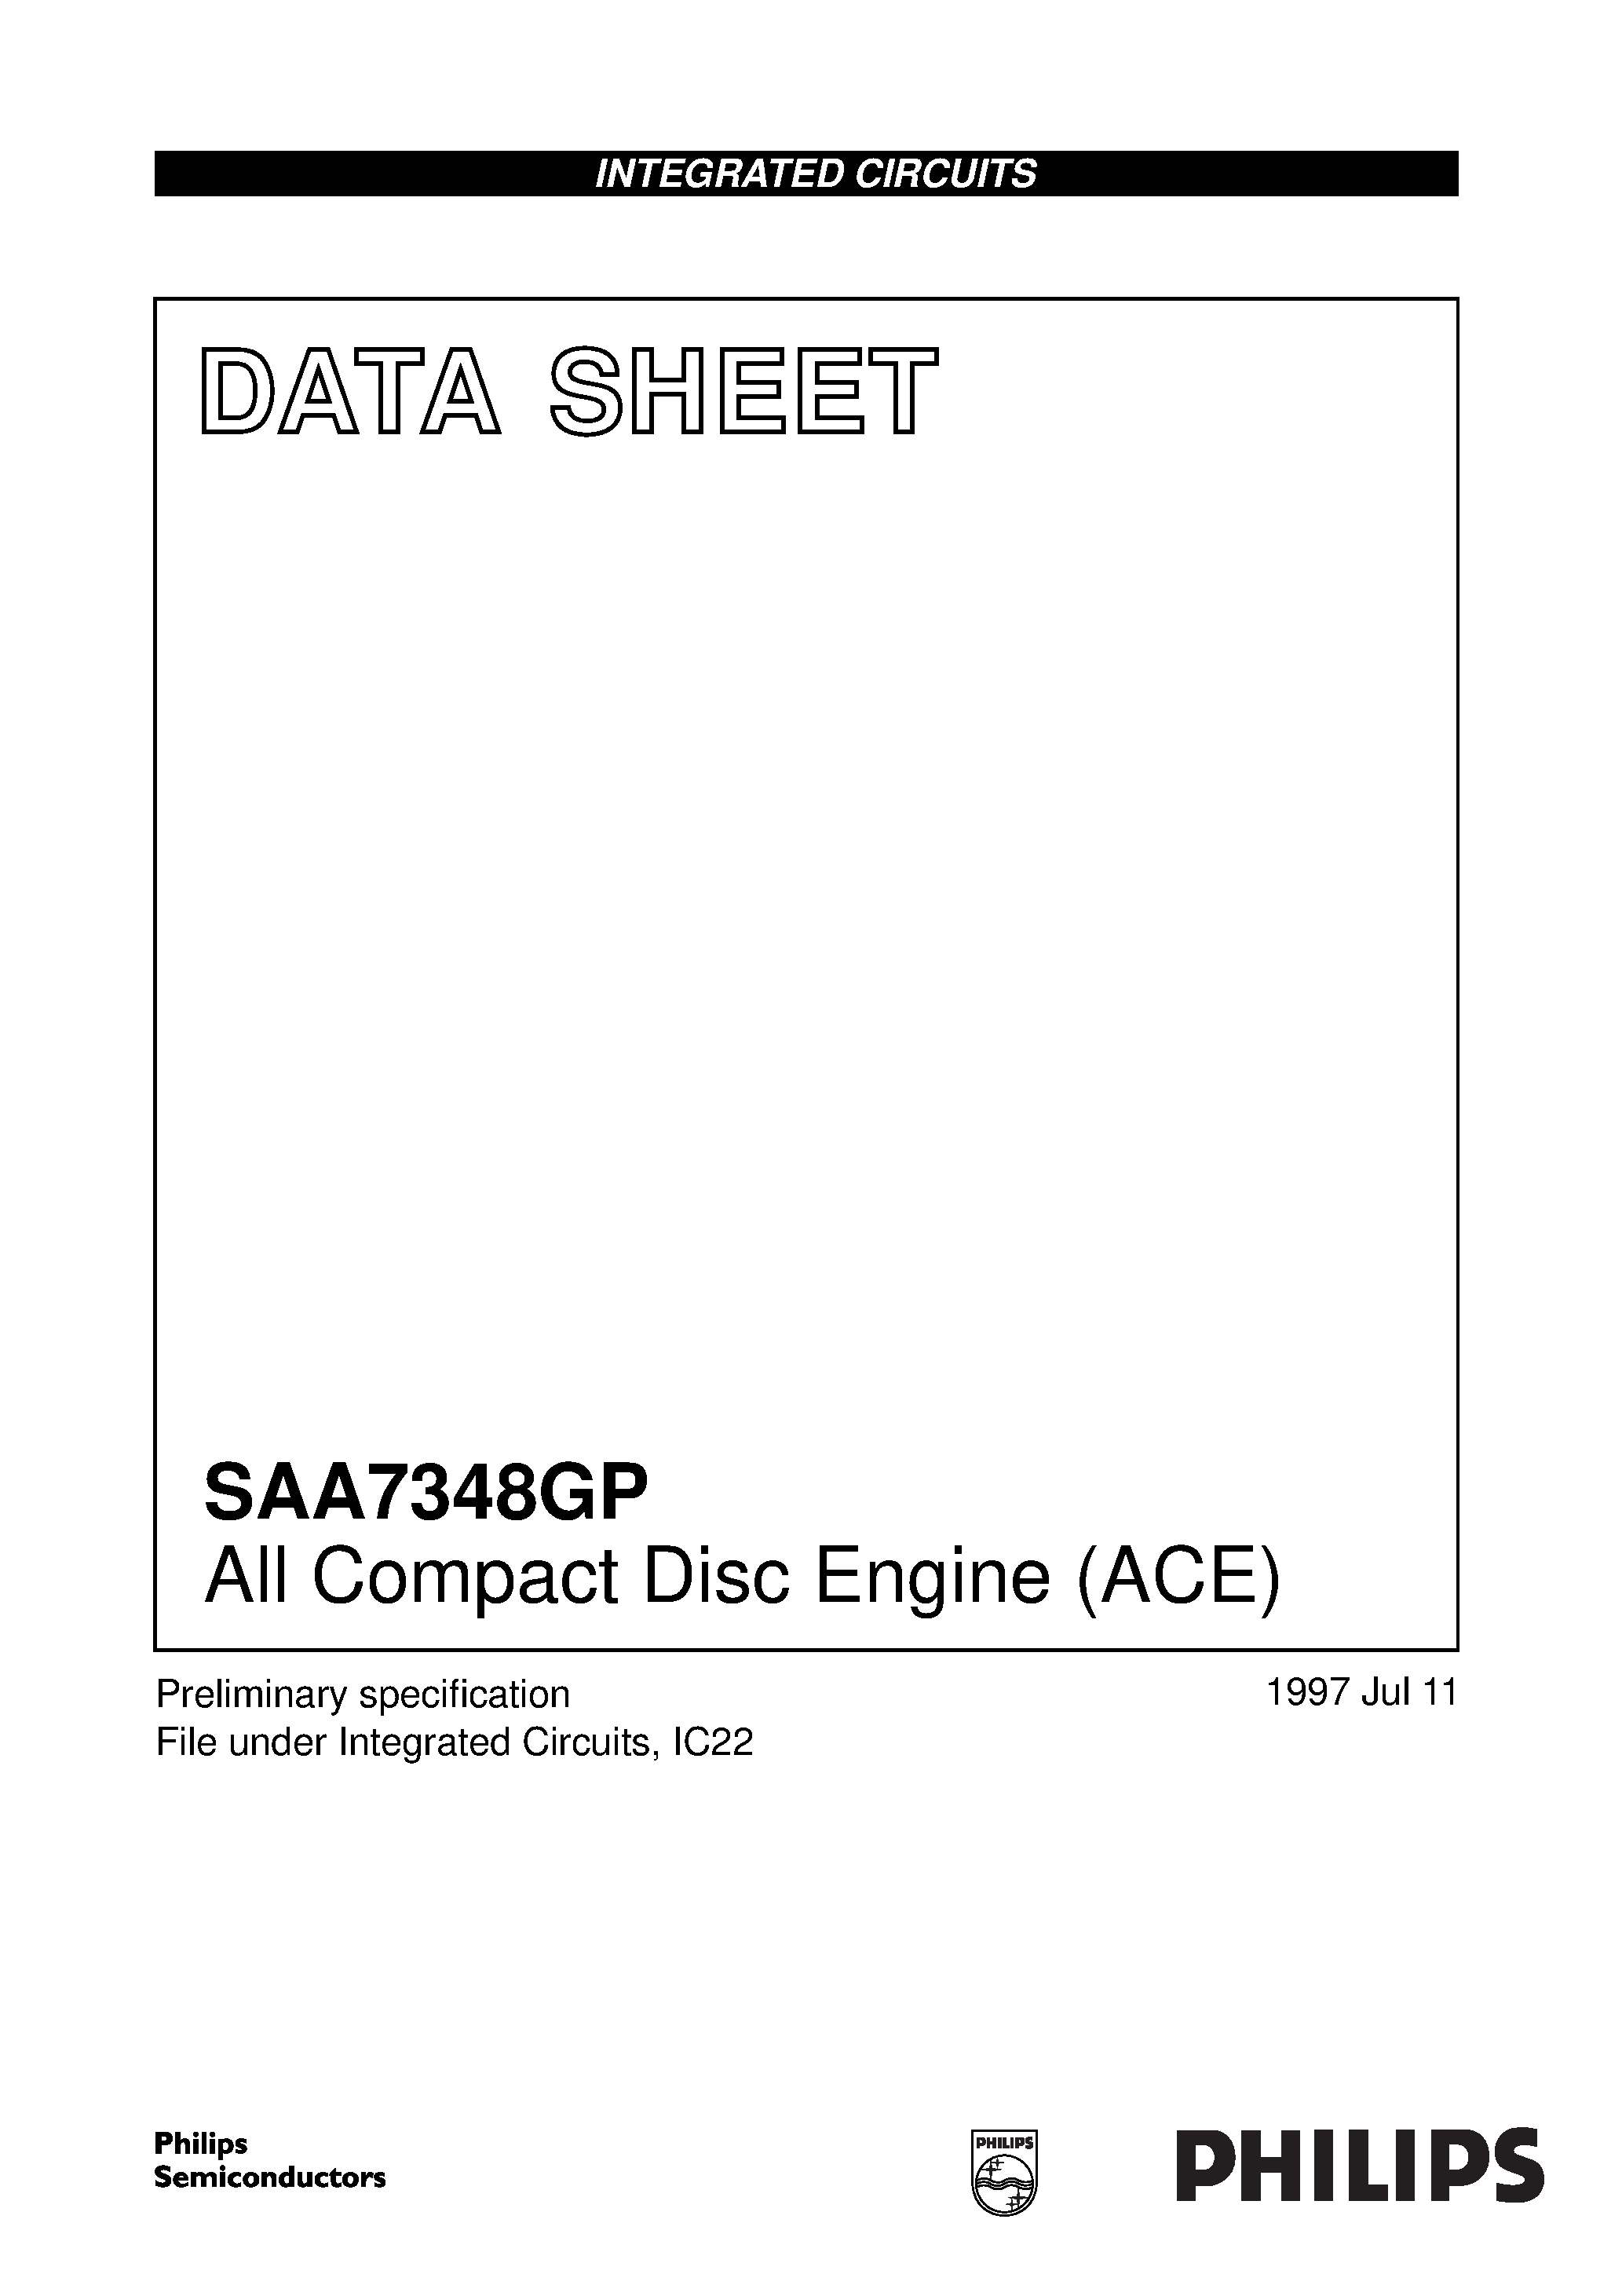 Даташит SAA7348GP - All Compact Disc Engine ACE страница 1